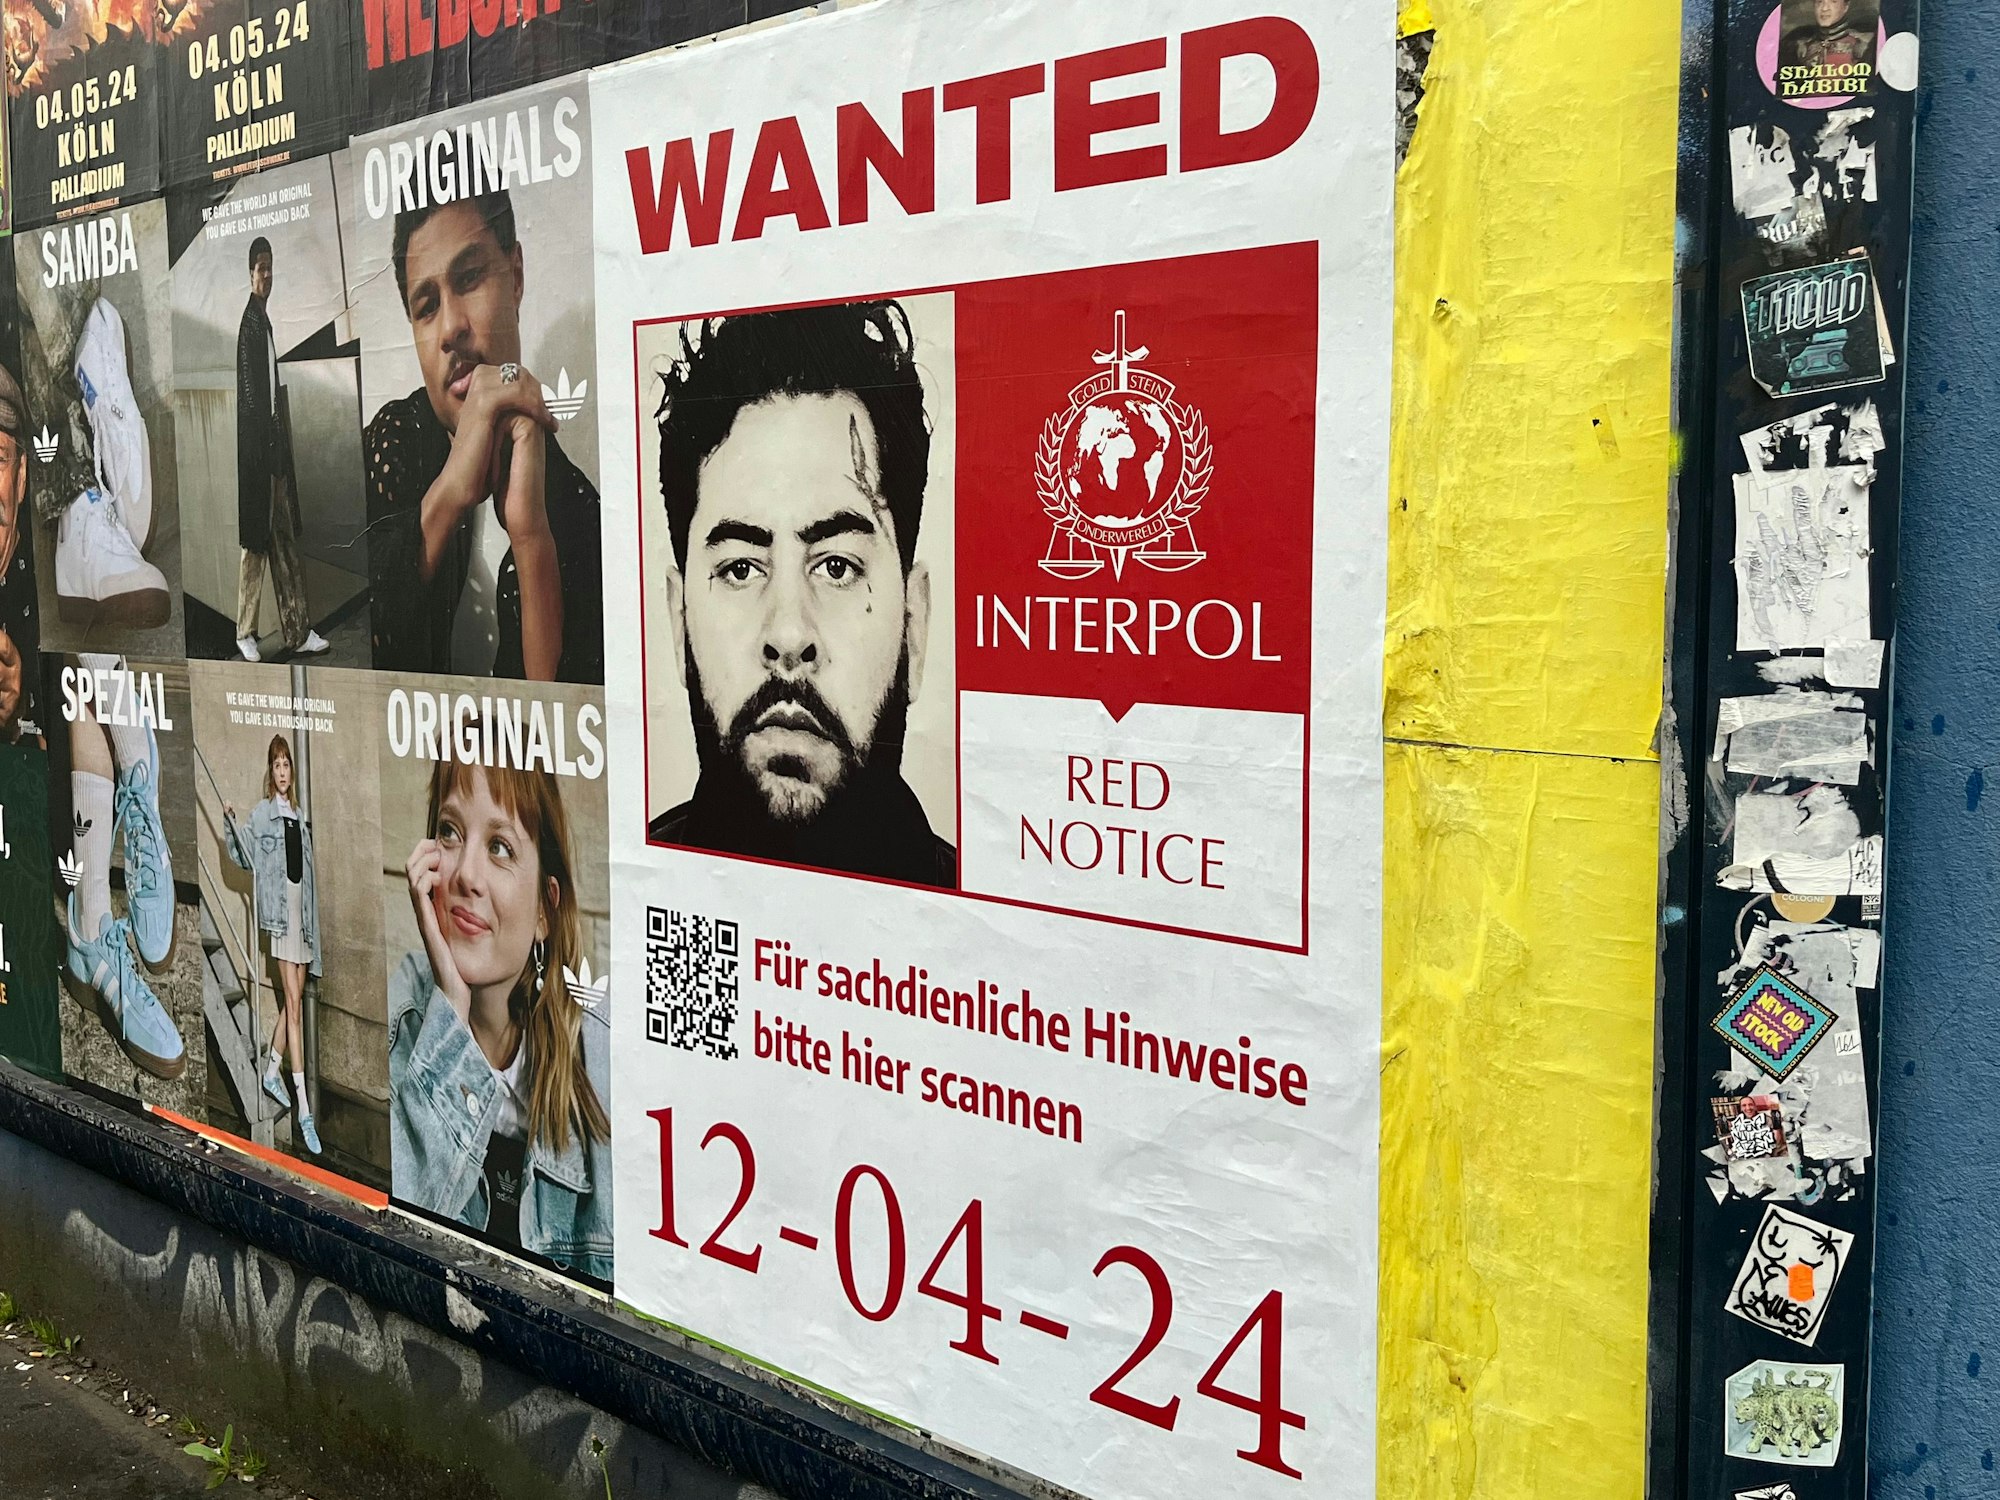 Ein Plakat hängt an der Wand. Darauf steht „Wanted“ und Interpol.